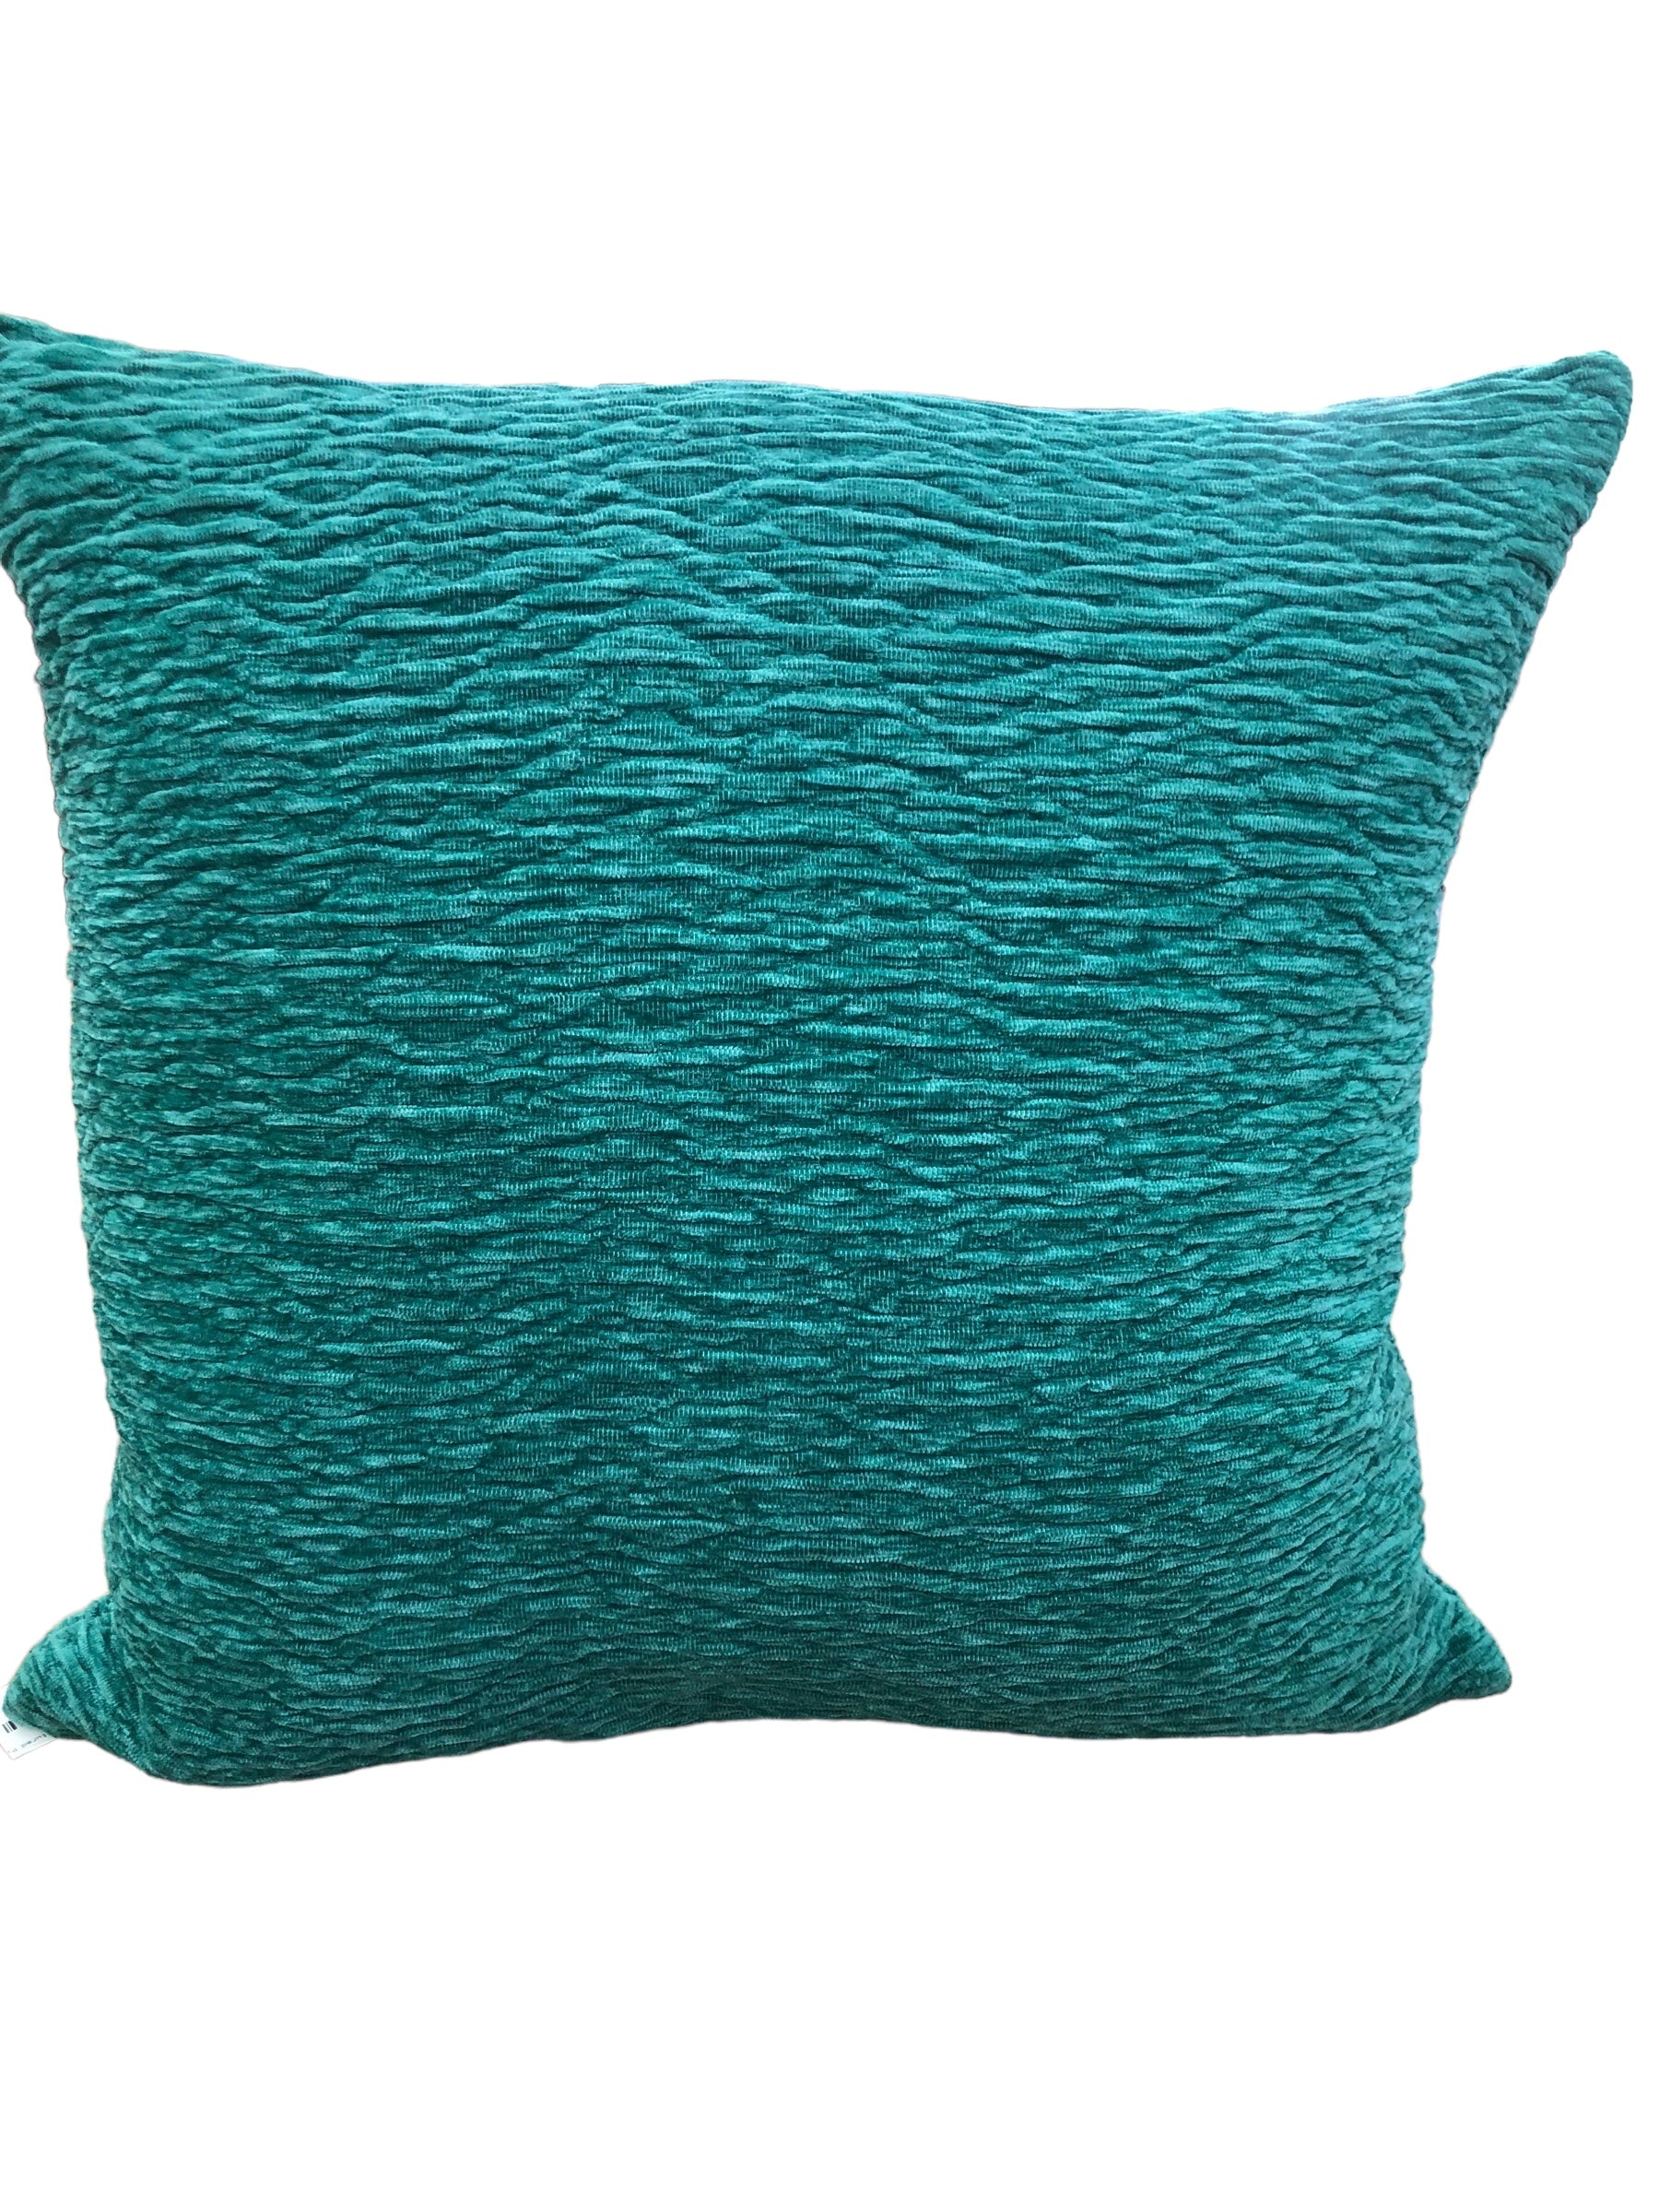 Emerald Green Textured Pillow